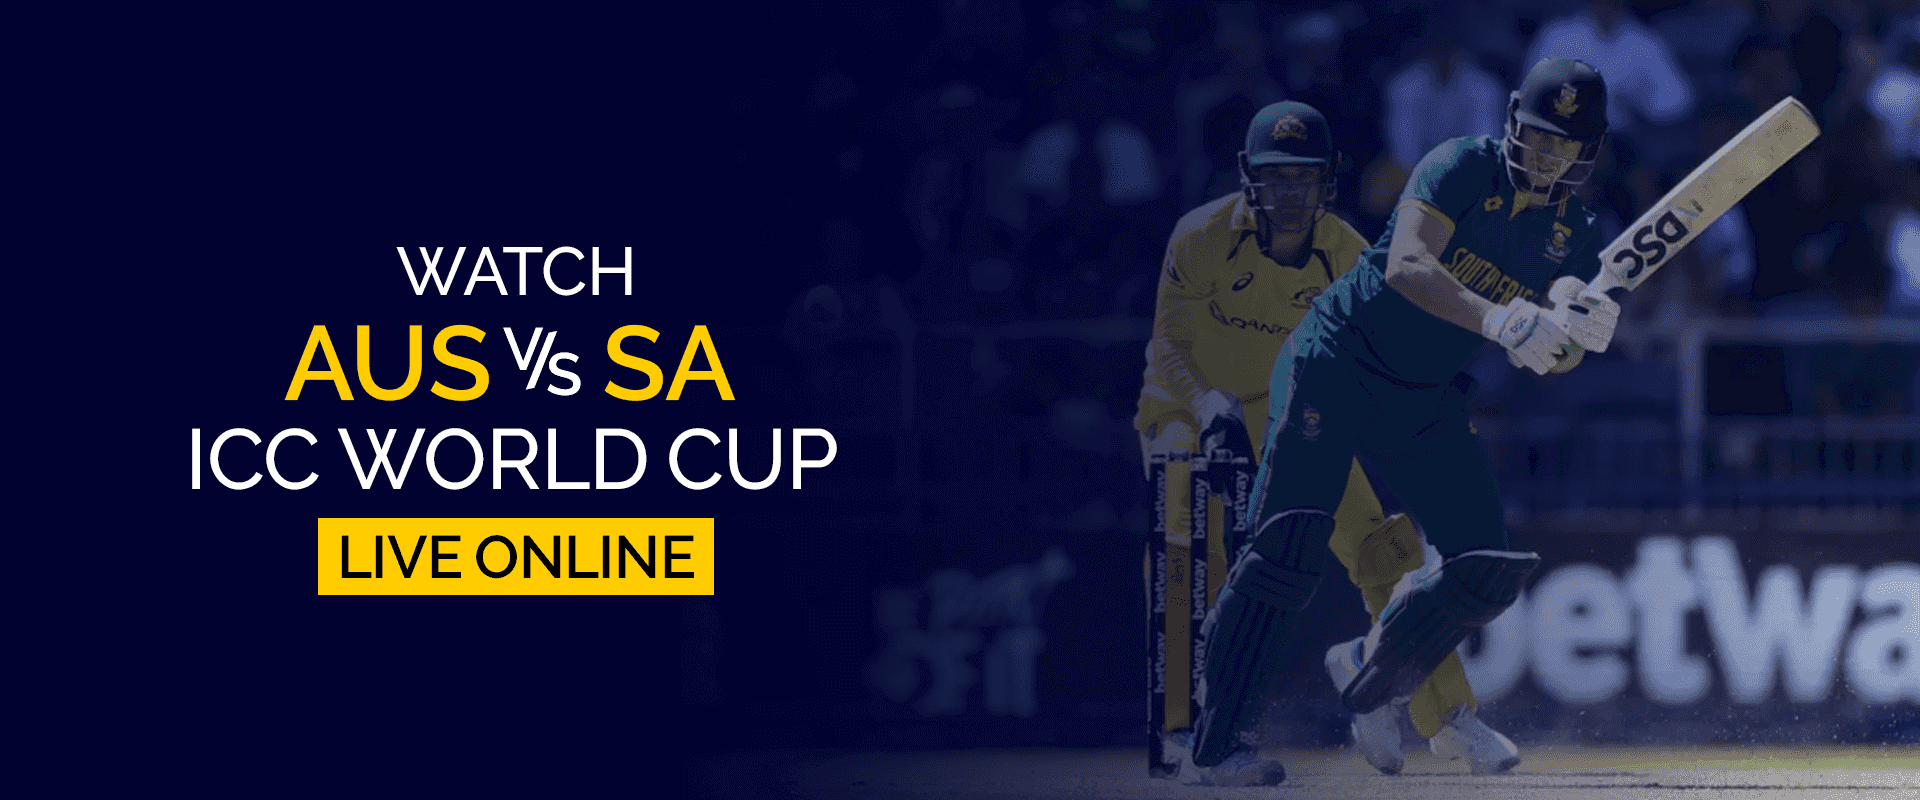 Смотрите матч чемпионата мира AUS против SA ICC в прямом эфире онлайн